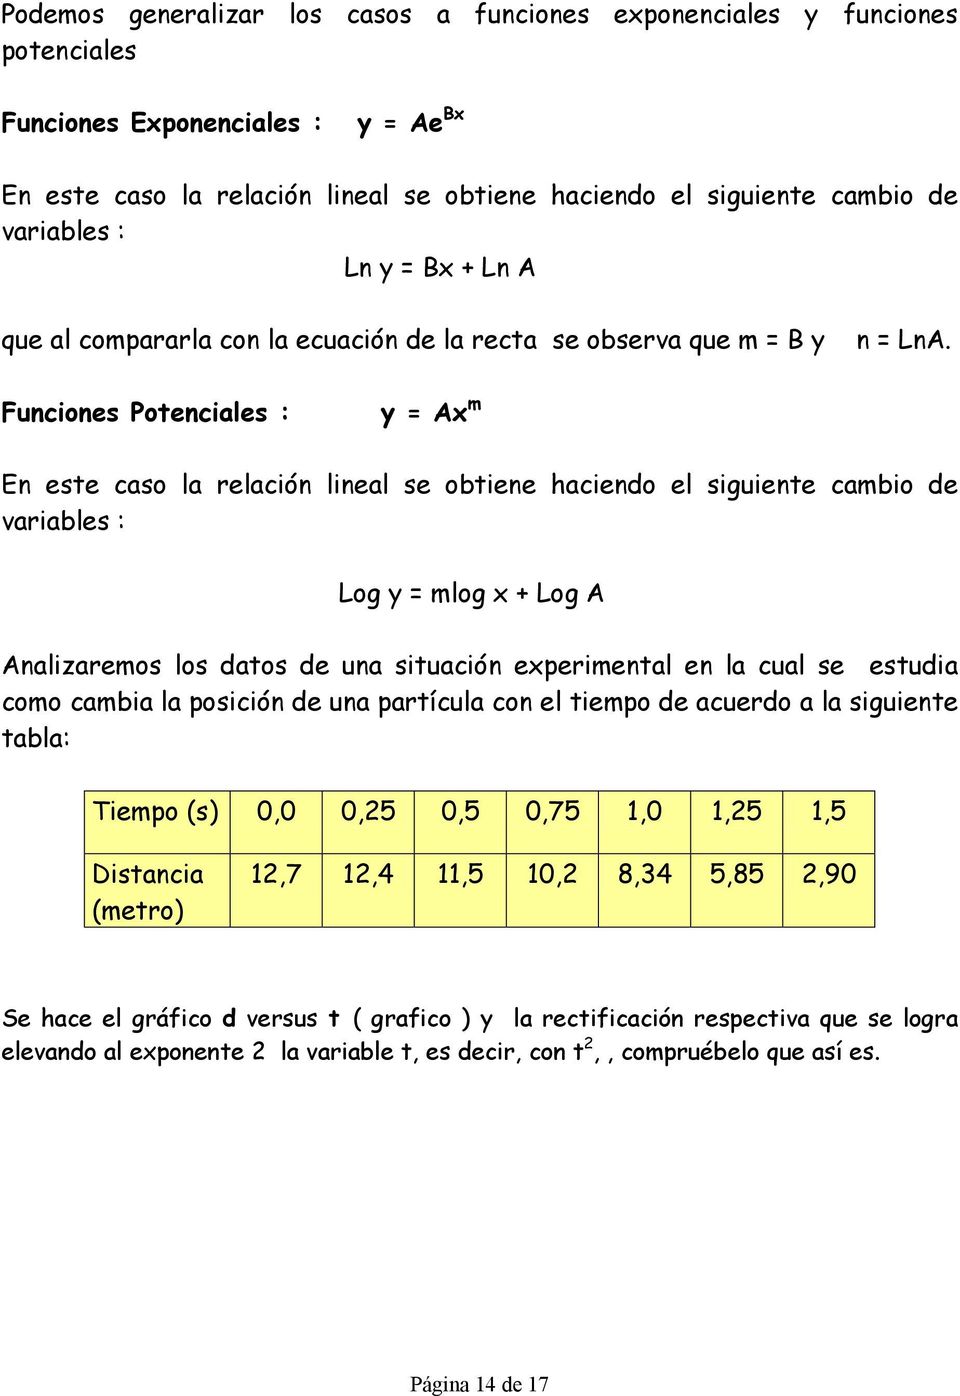 Funciones Potenciales : y = Ax m En este caso la relación lineal se obtiene haciendo el siguiente cambio de variables : Log y = mlog x + Log A Analizaremos los datos de una situación experimental en